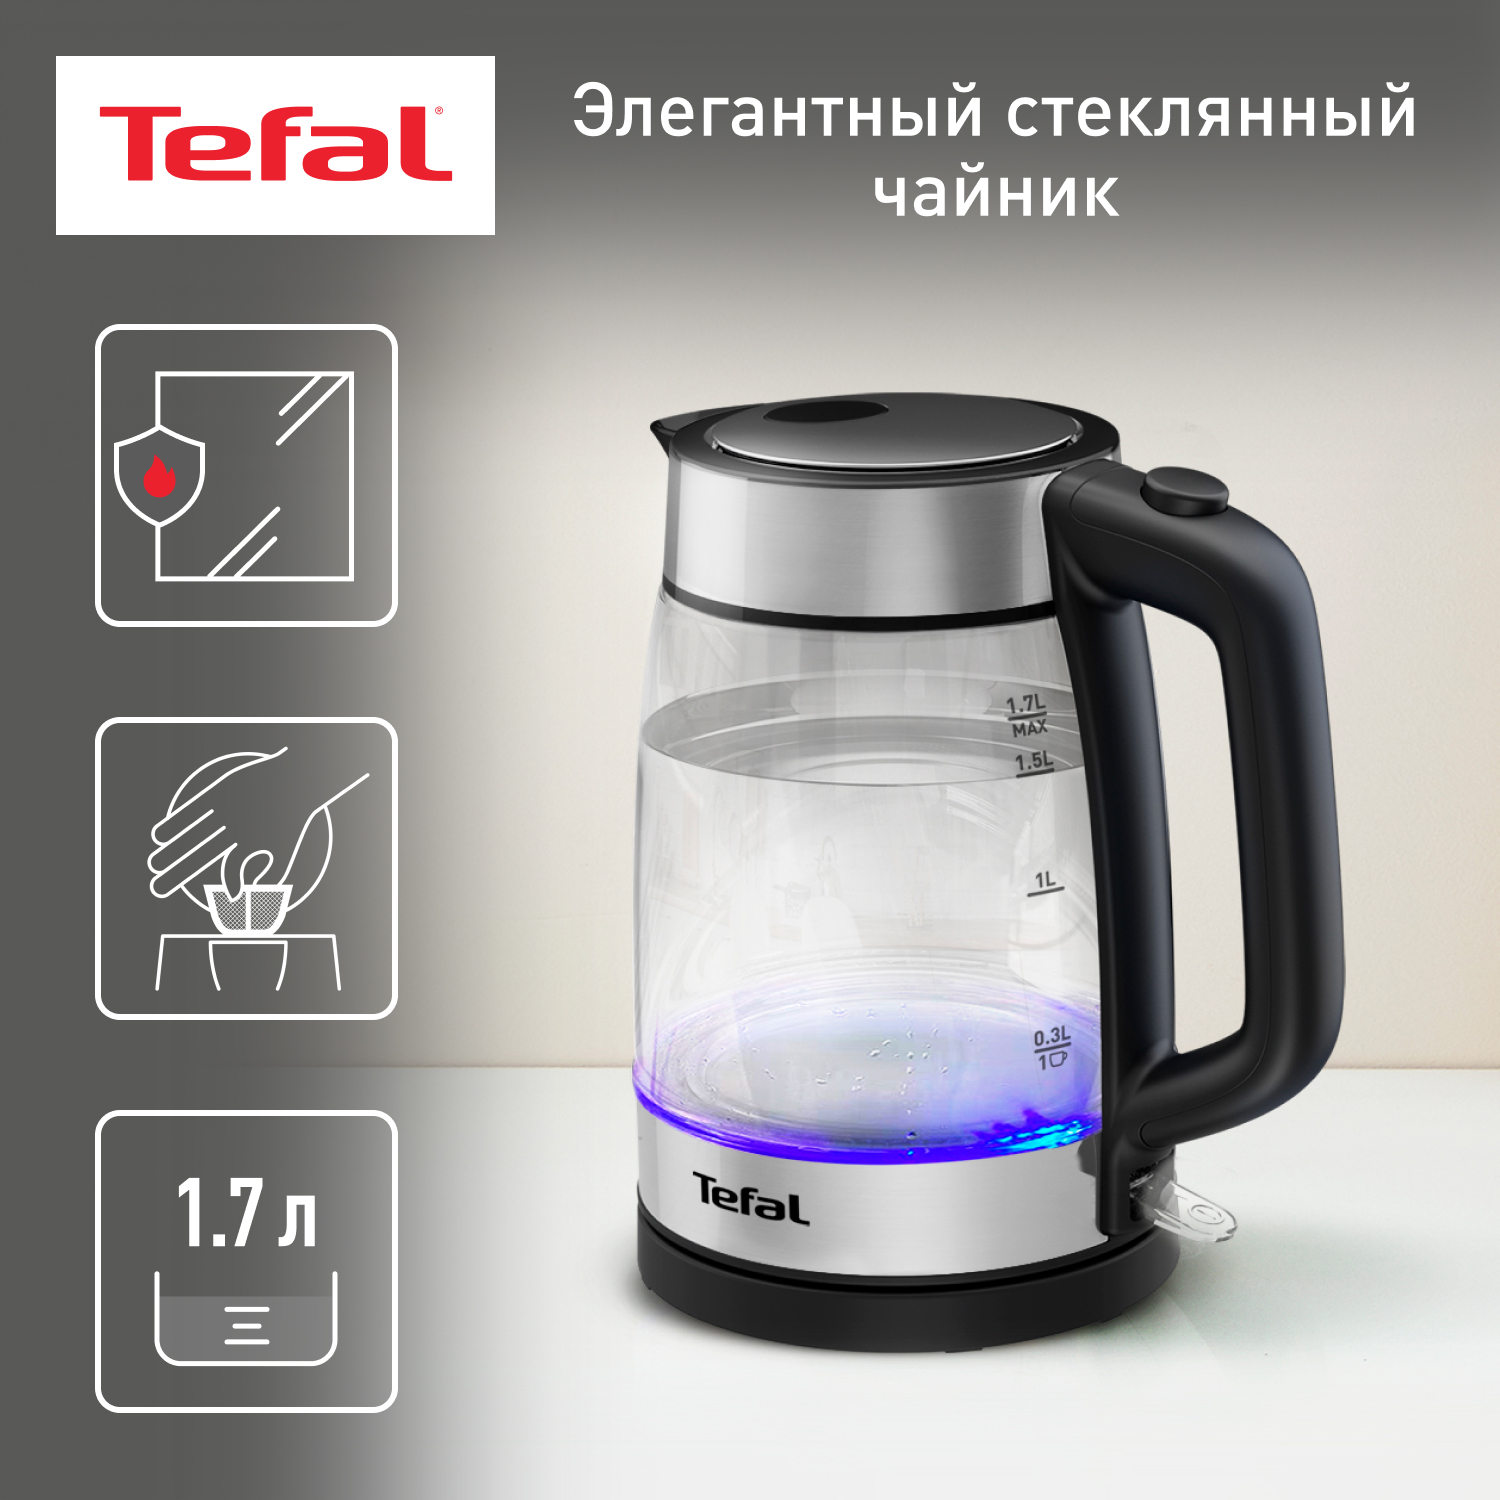 Чайник электрический Tefal KI700830 1.7 л прозрачный, серебристый, черный афганистан что о нём нужно знать каждому рубин б